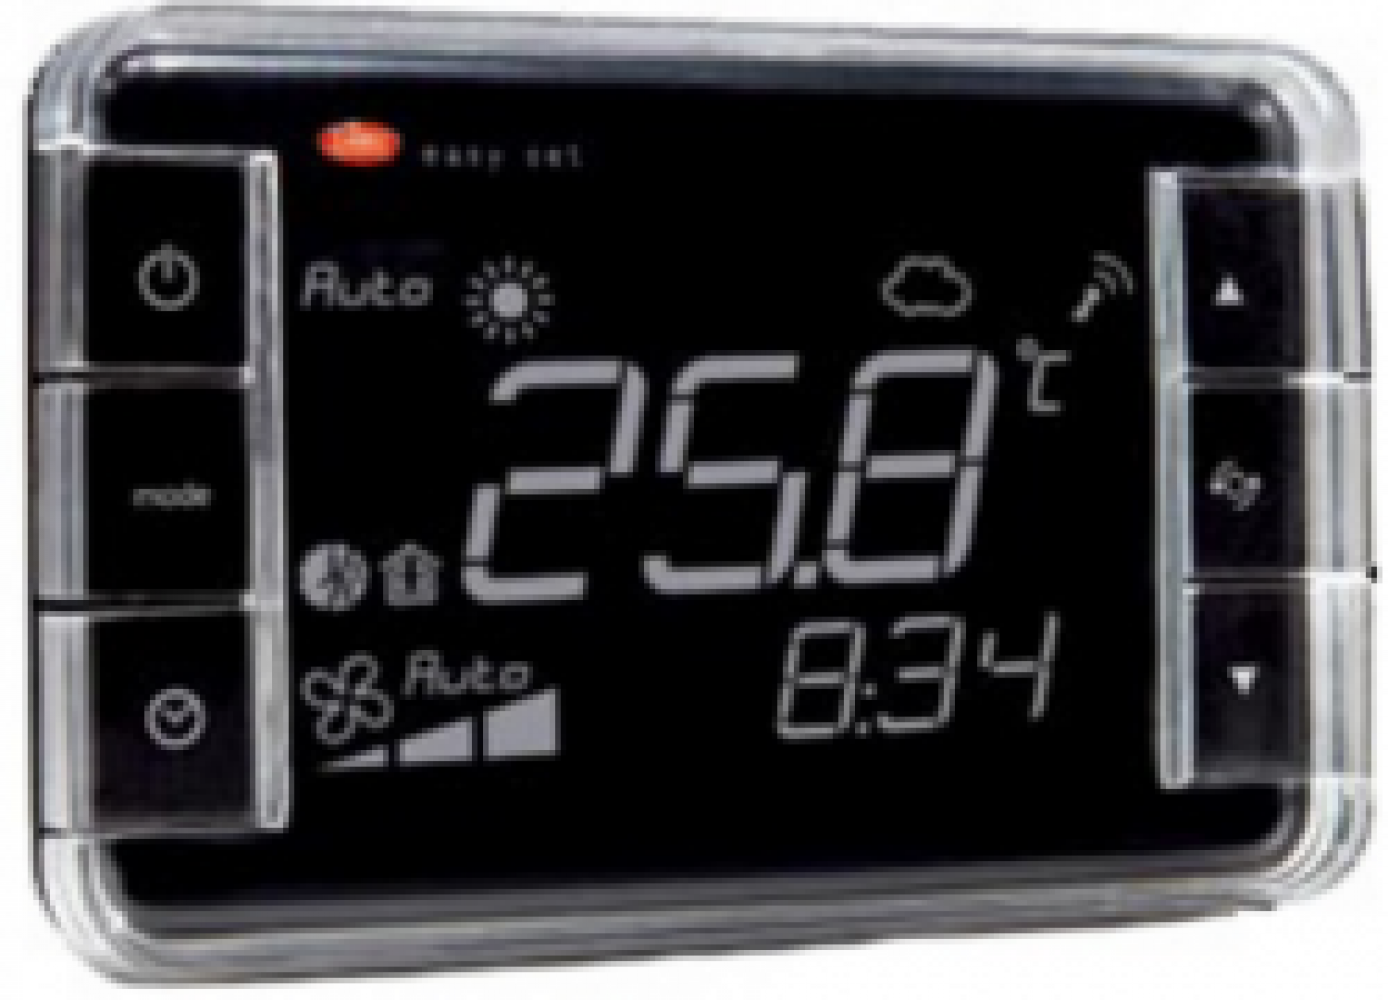 EW01TA2200 Термостат Easyset для e-dronic, контроль температуры, корпус черного цвета, &quot;инверсное&quot; отображение